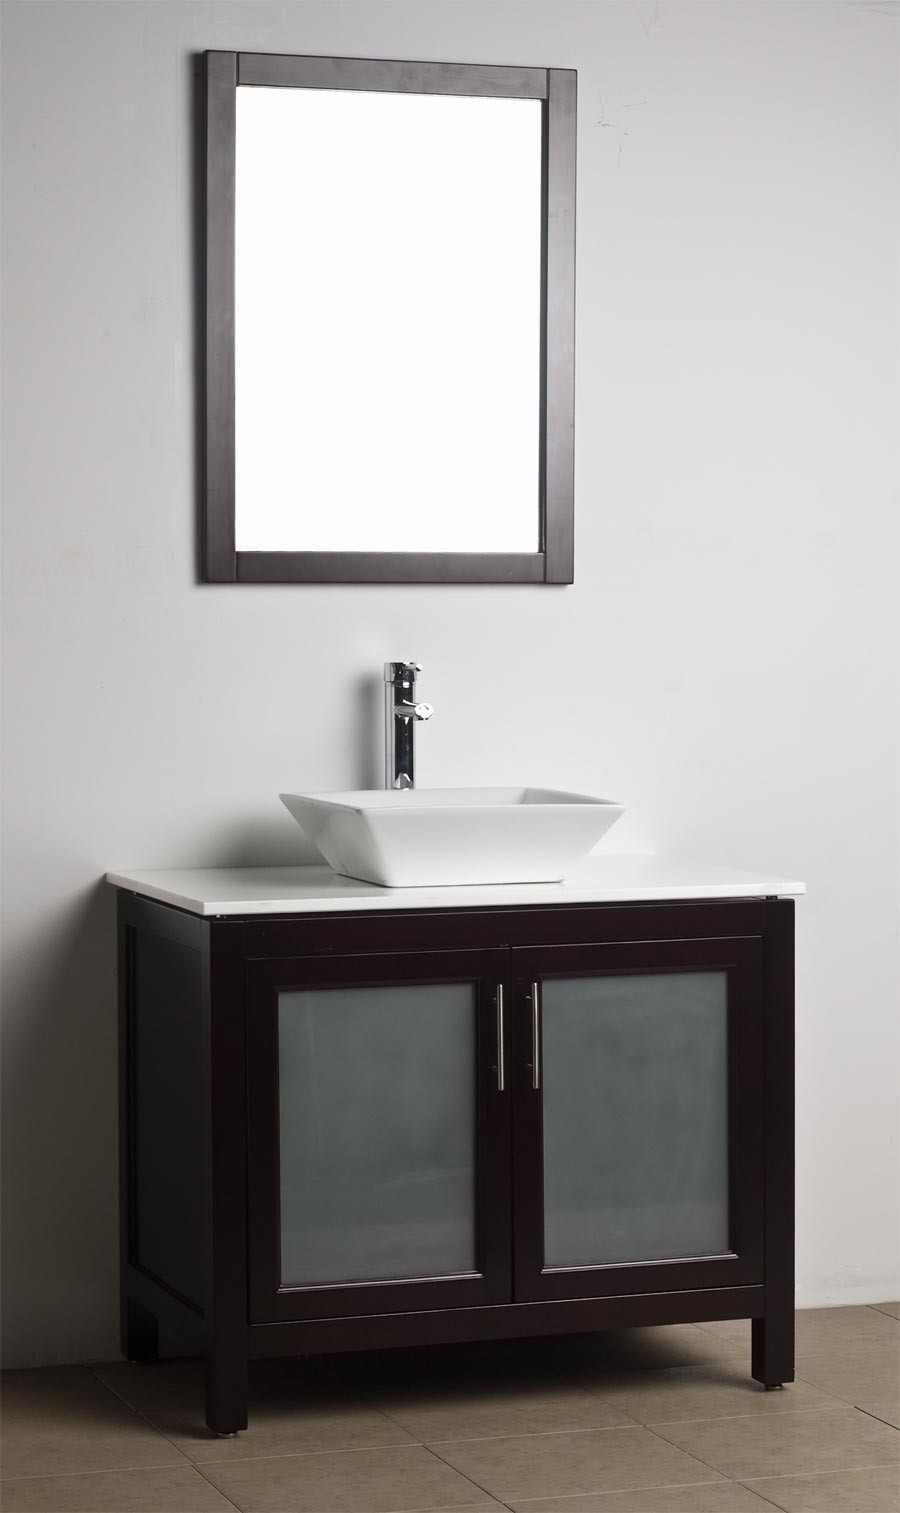 Bathroom Vanity Wood
 Bathroom Vanity Solid Wood Espresso WH 0908 5